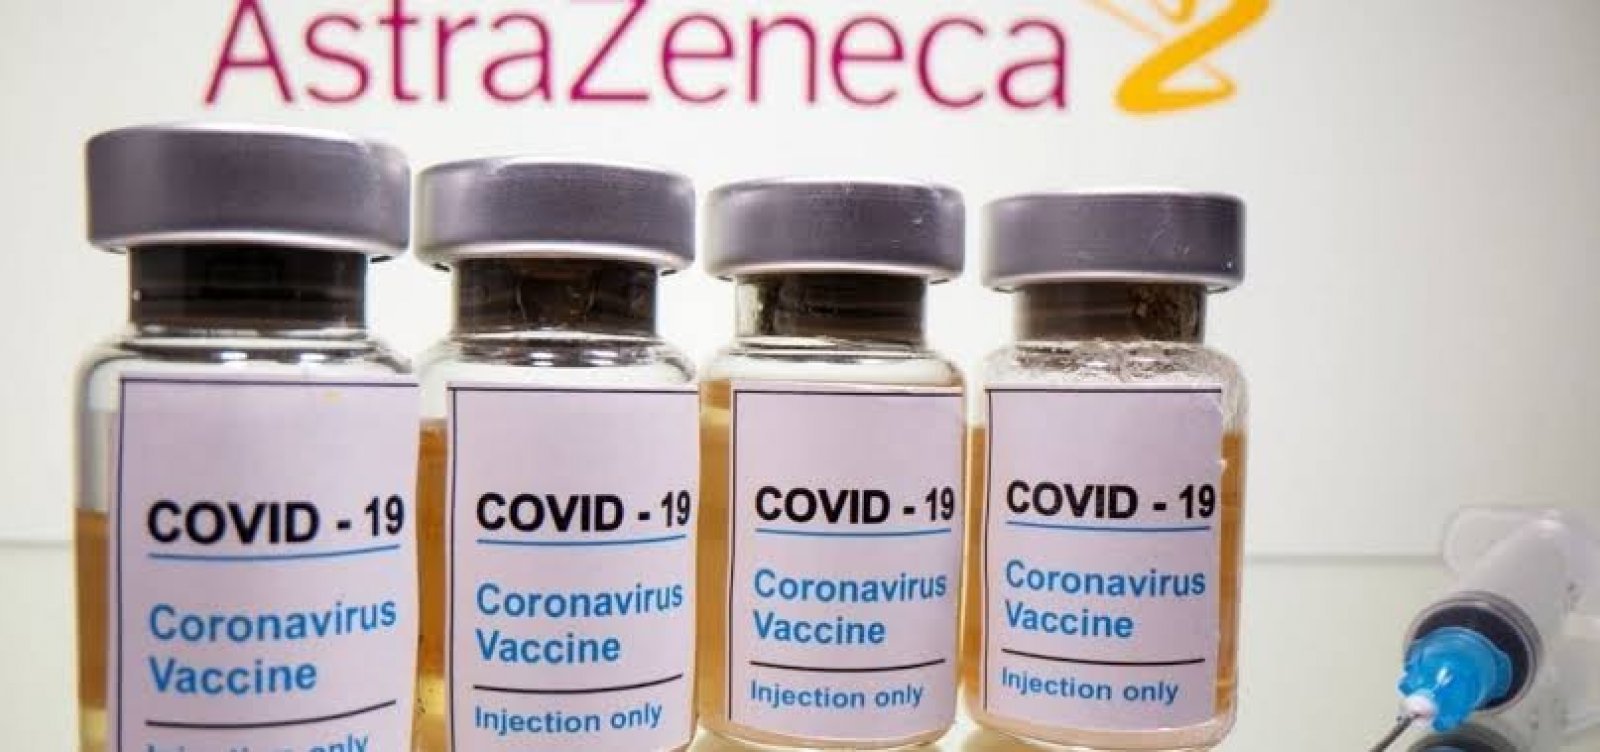 Brasil deve receber próximo lote de vacinas da Covax Facility neste mês